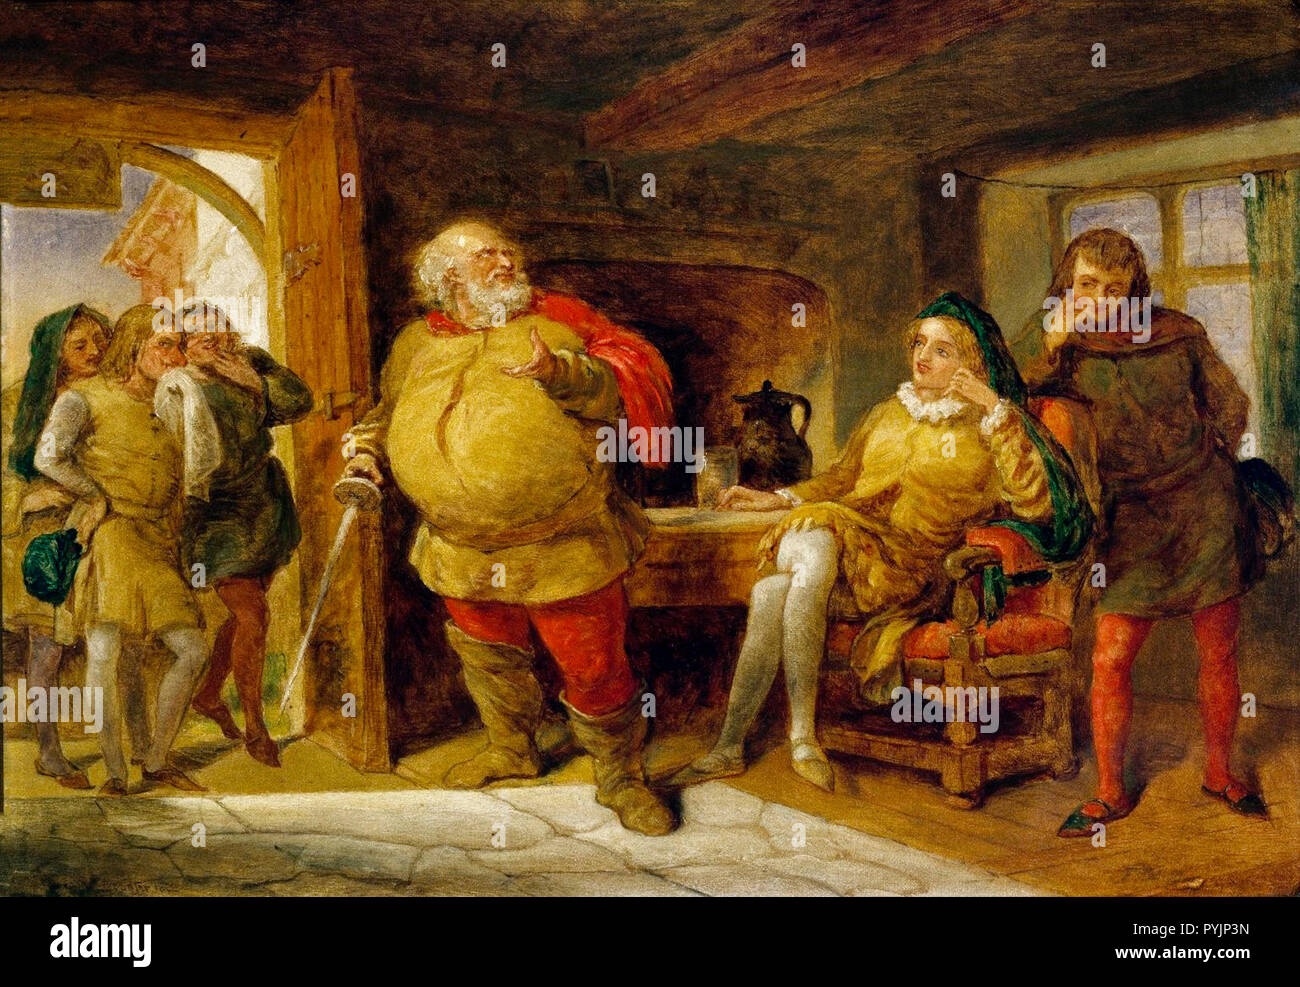 Peto, Bardolph et Gadshill à gauche ; Falstaff dans le centre ; Hal et poins à droite dans la tête de sanglier, taverne. Illustration de Henry IV, partie 1, Acte 2, scène 4. Artiste inconnu, c.1840 Banque D'Images